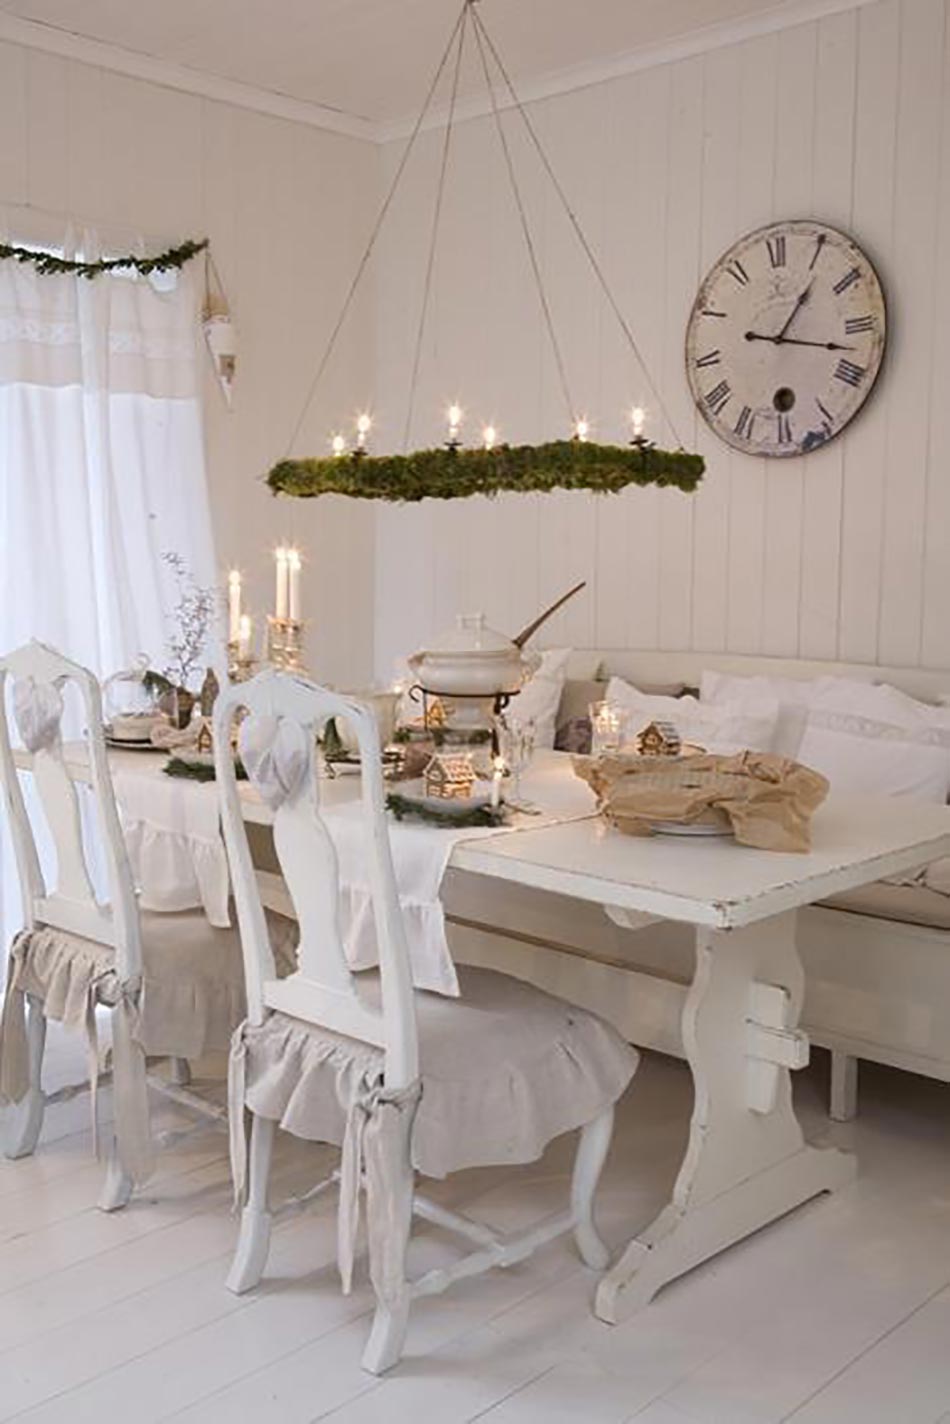 blanc et épurée décoration table de noel familiale